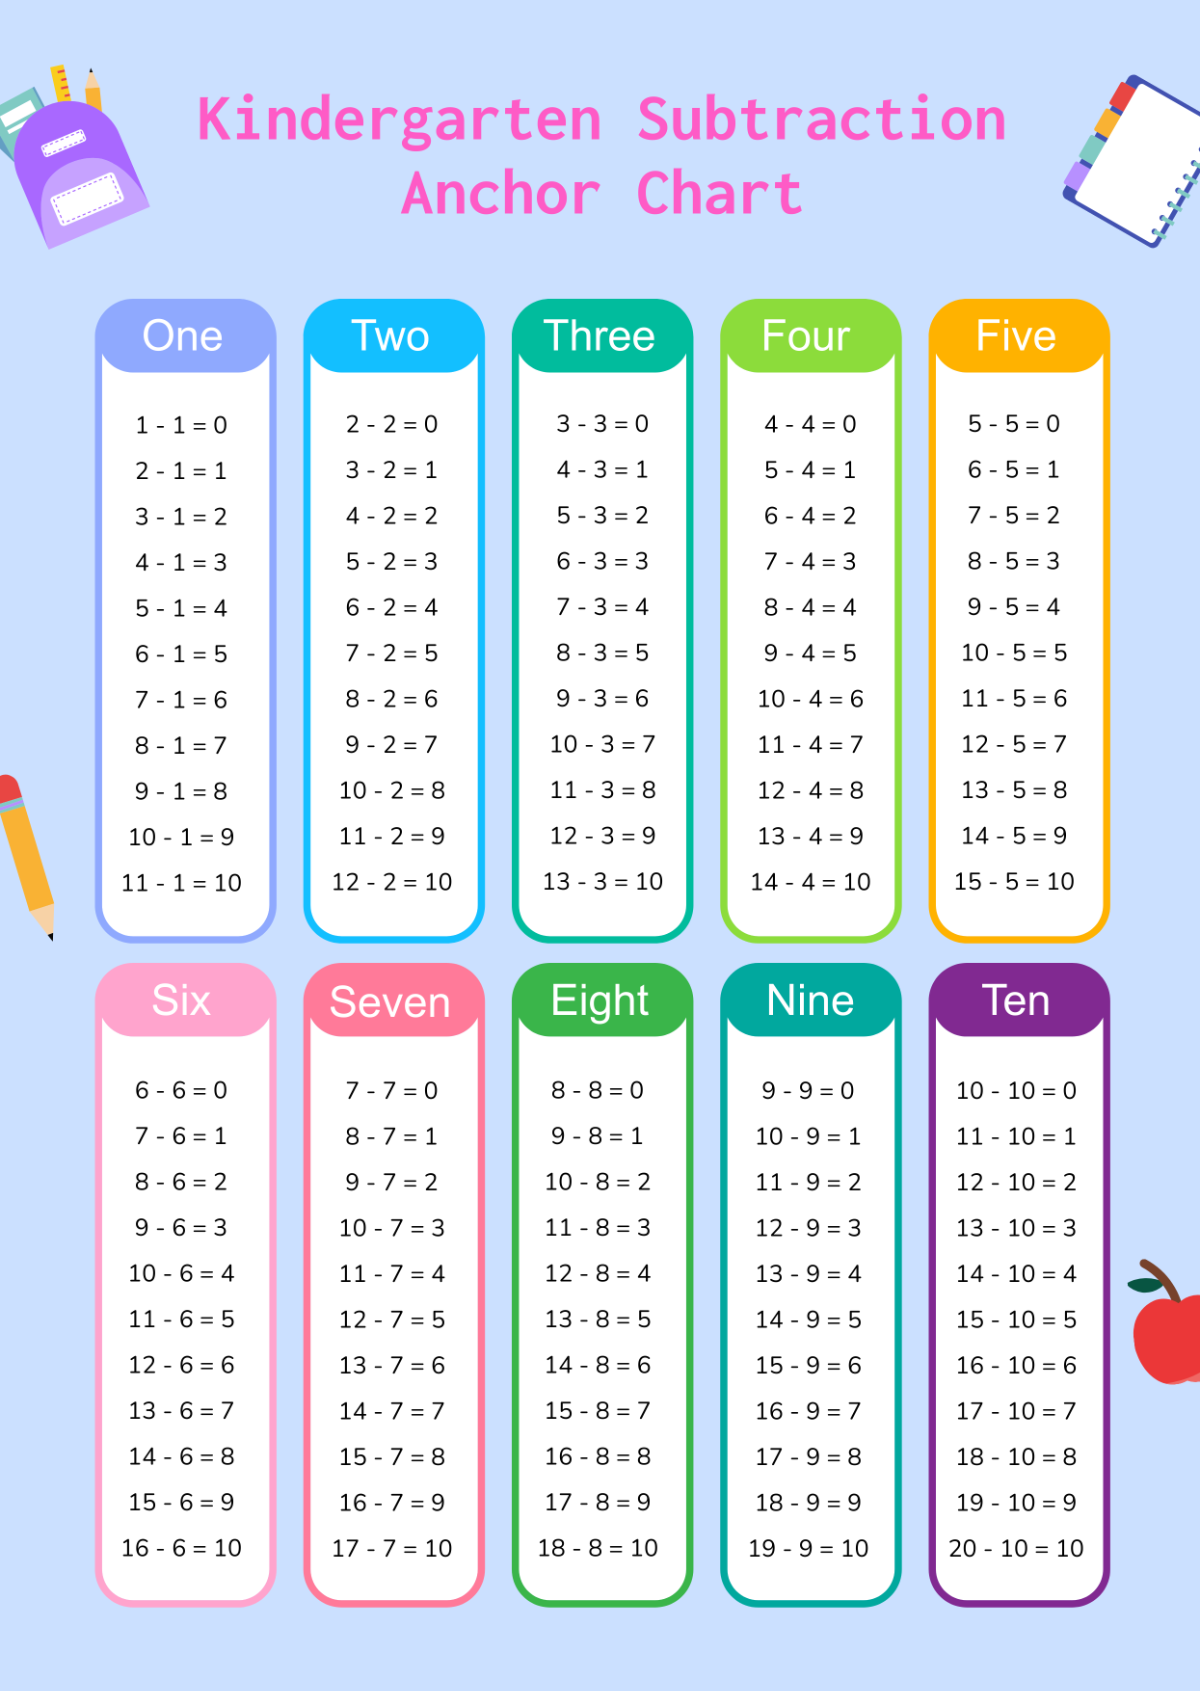 Kindergarten Subtraction Anchor Chart